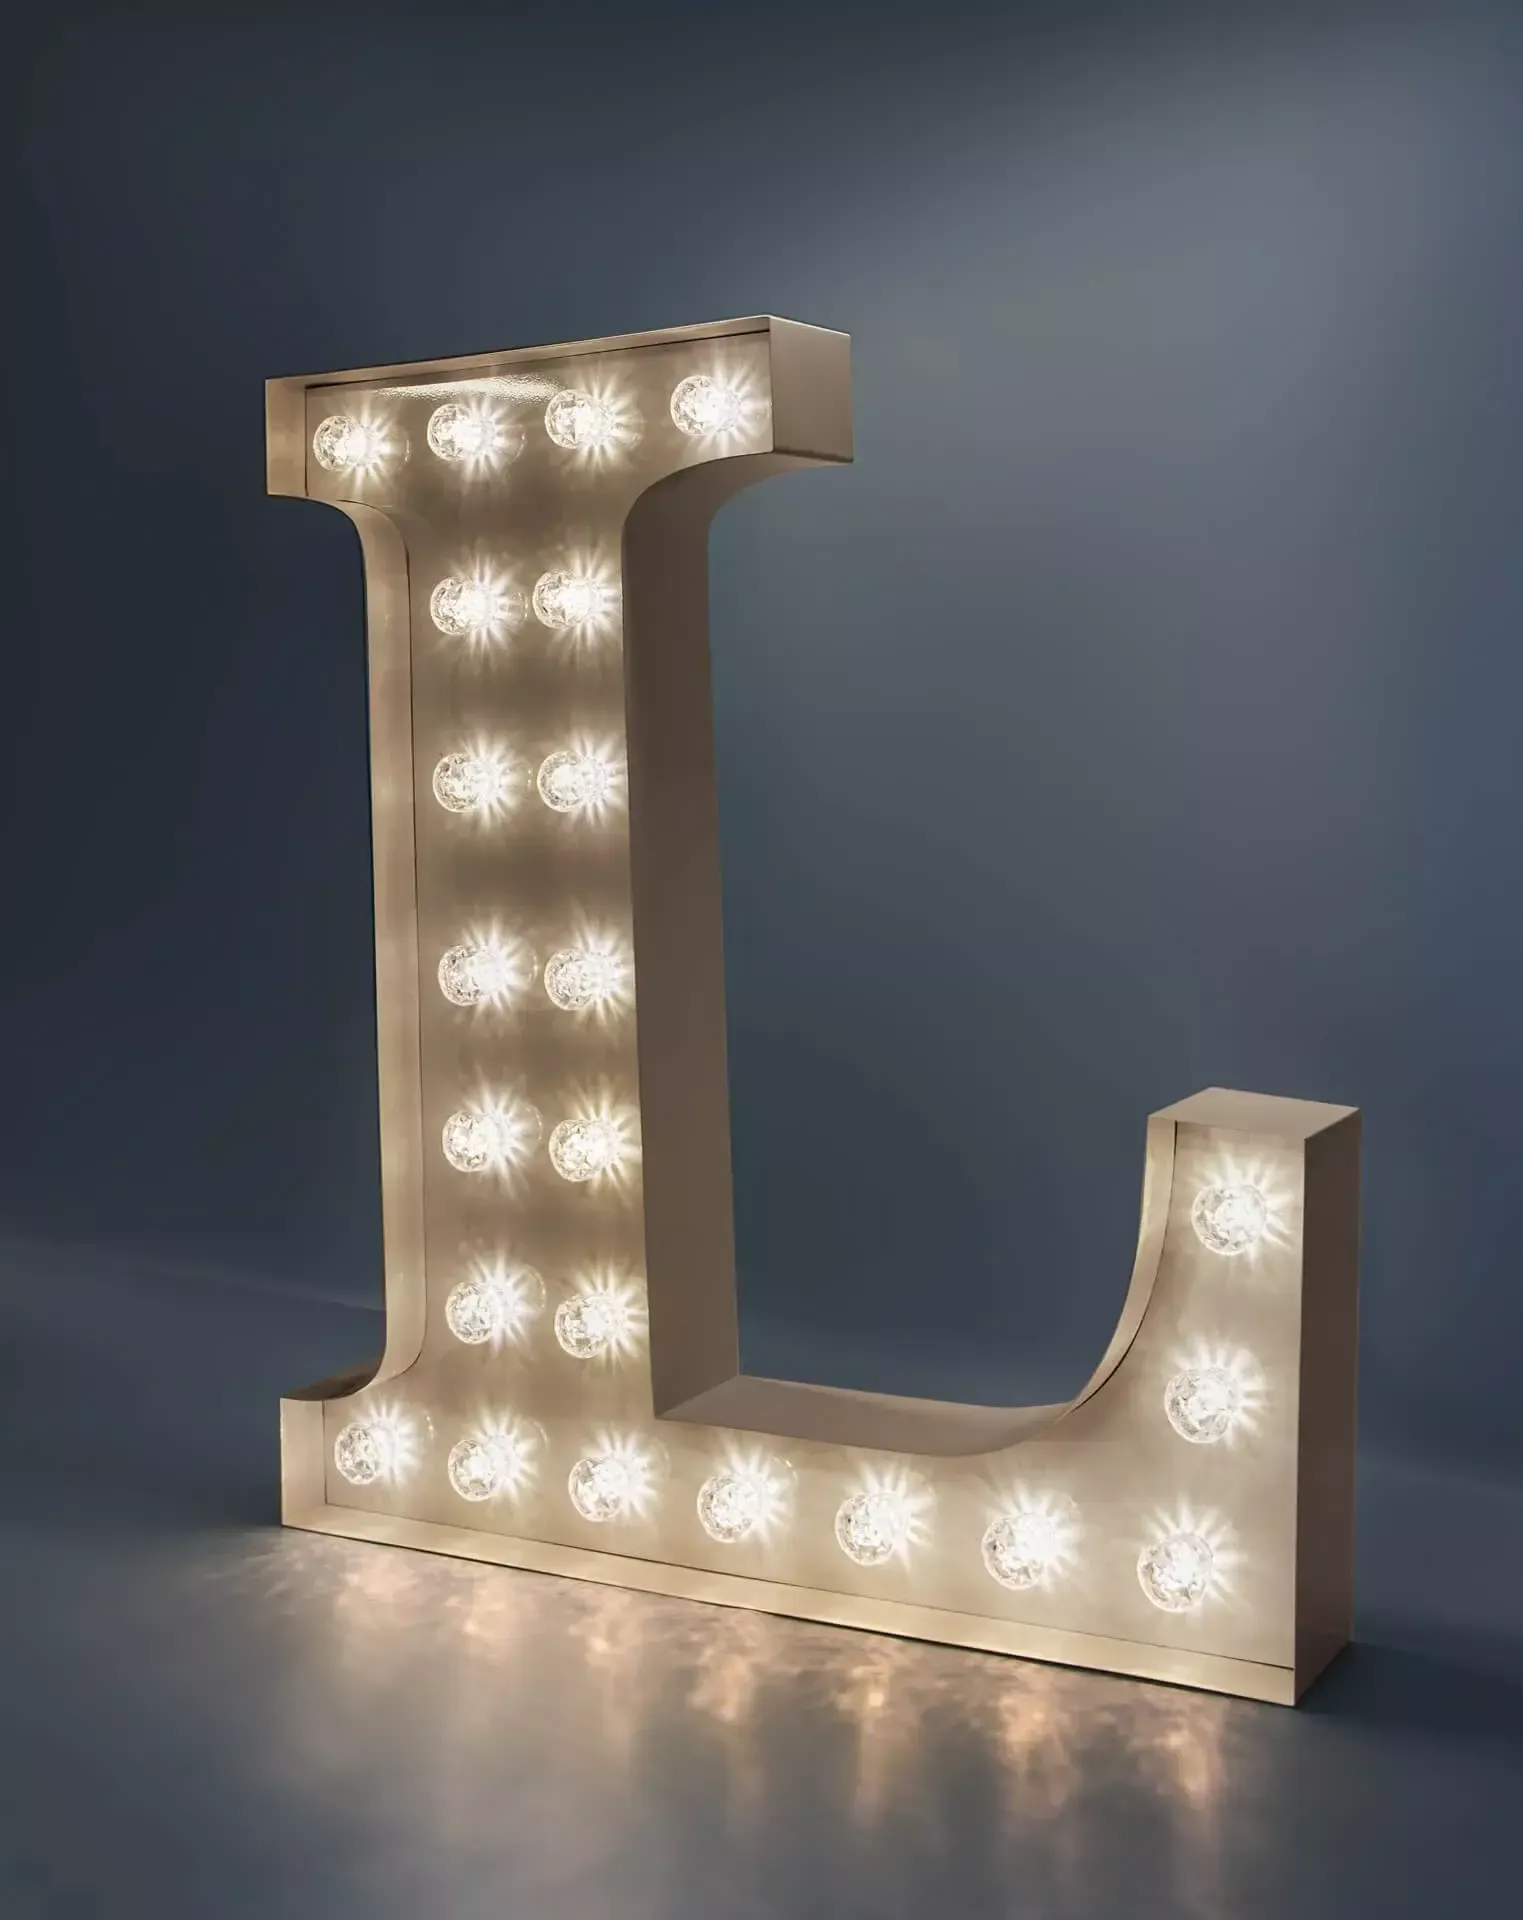 Litera L - świecąca litera z żarówkami w kolorze białym